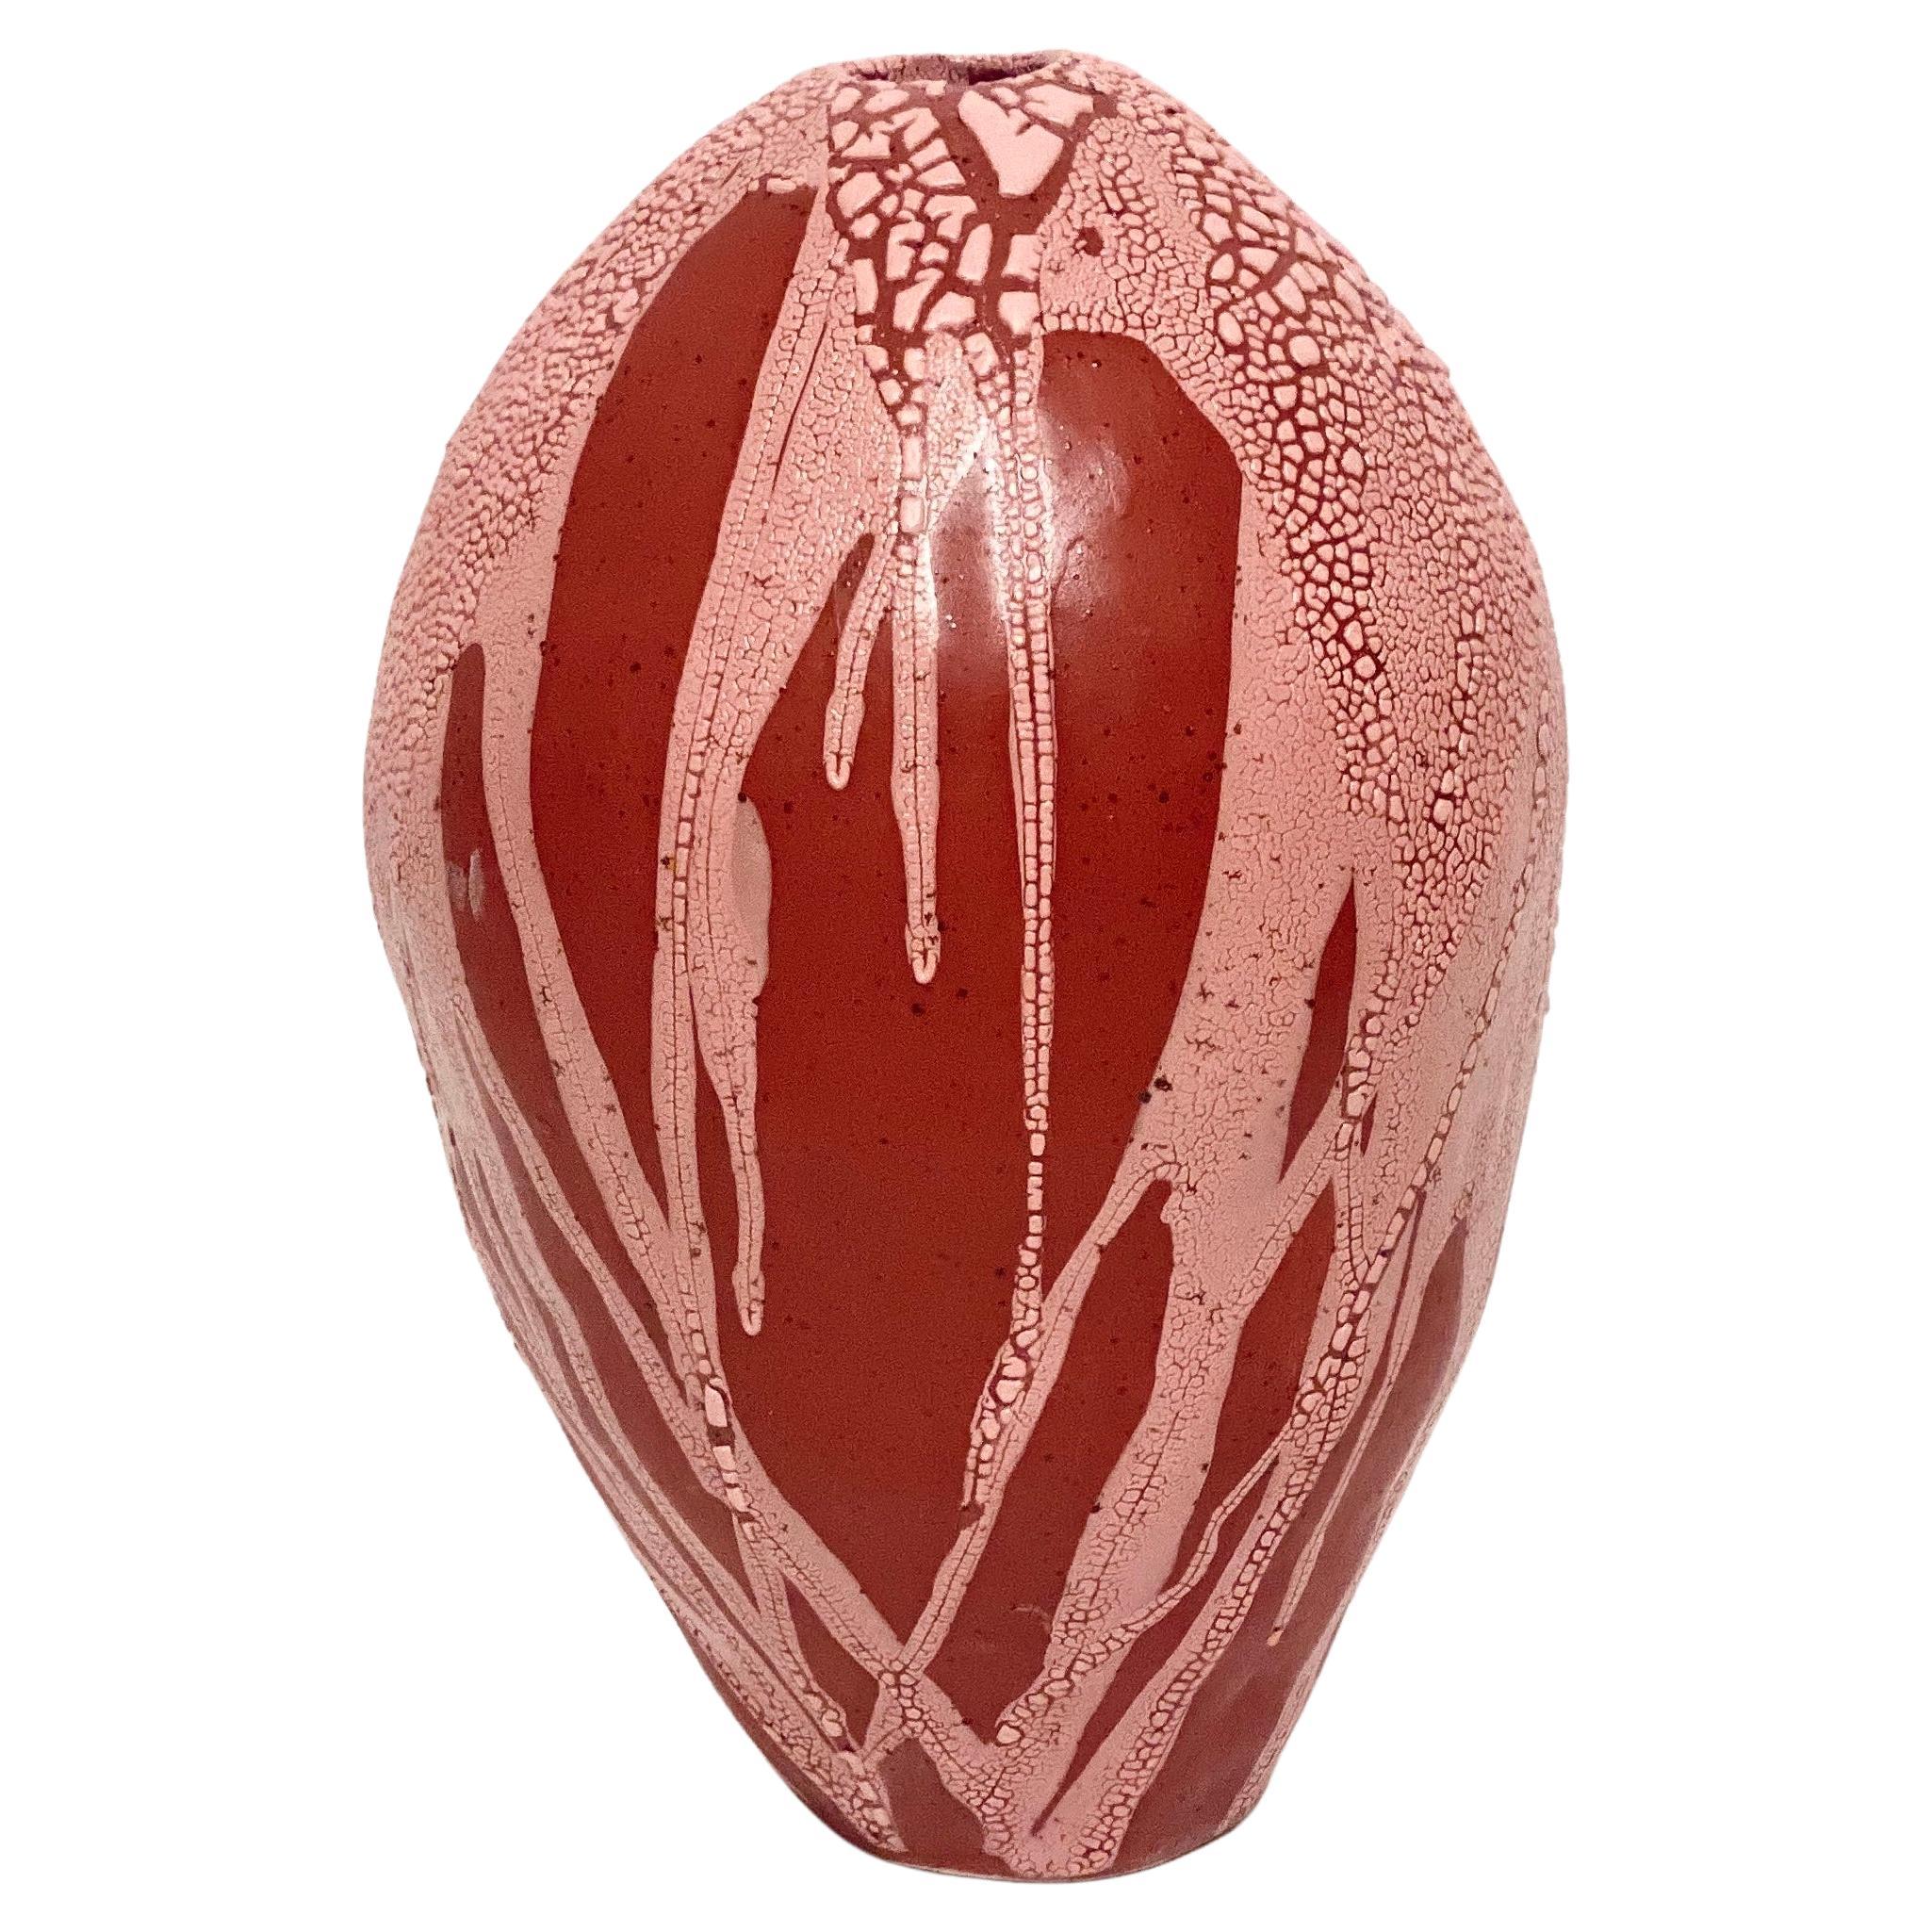 Rot-rosa Drachenei-Vase von Astrid Öhman